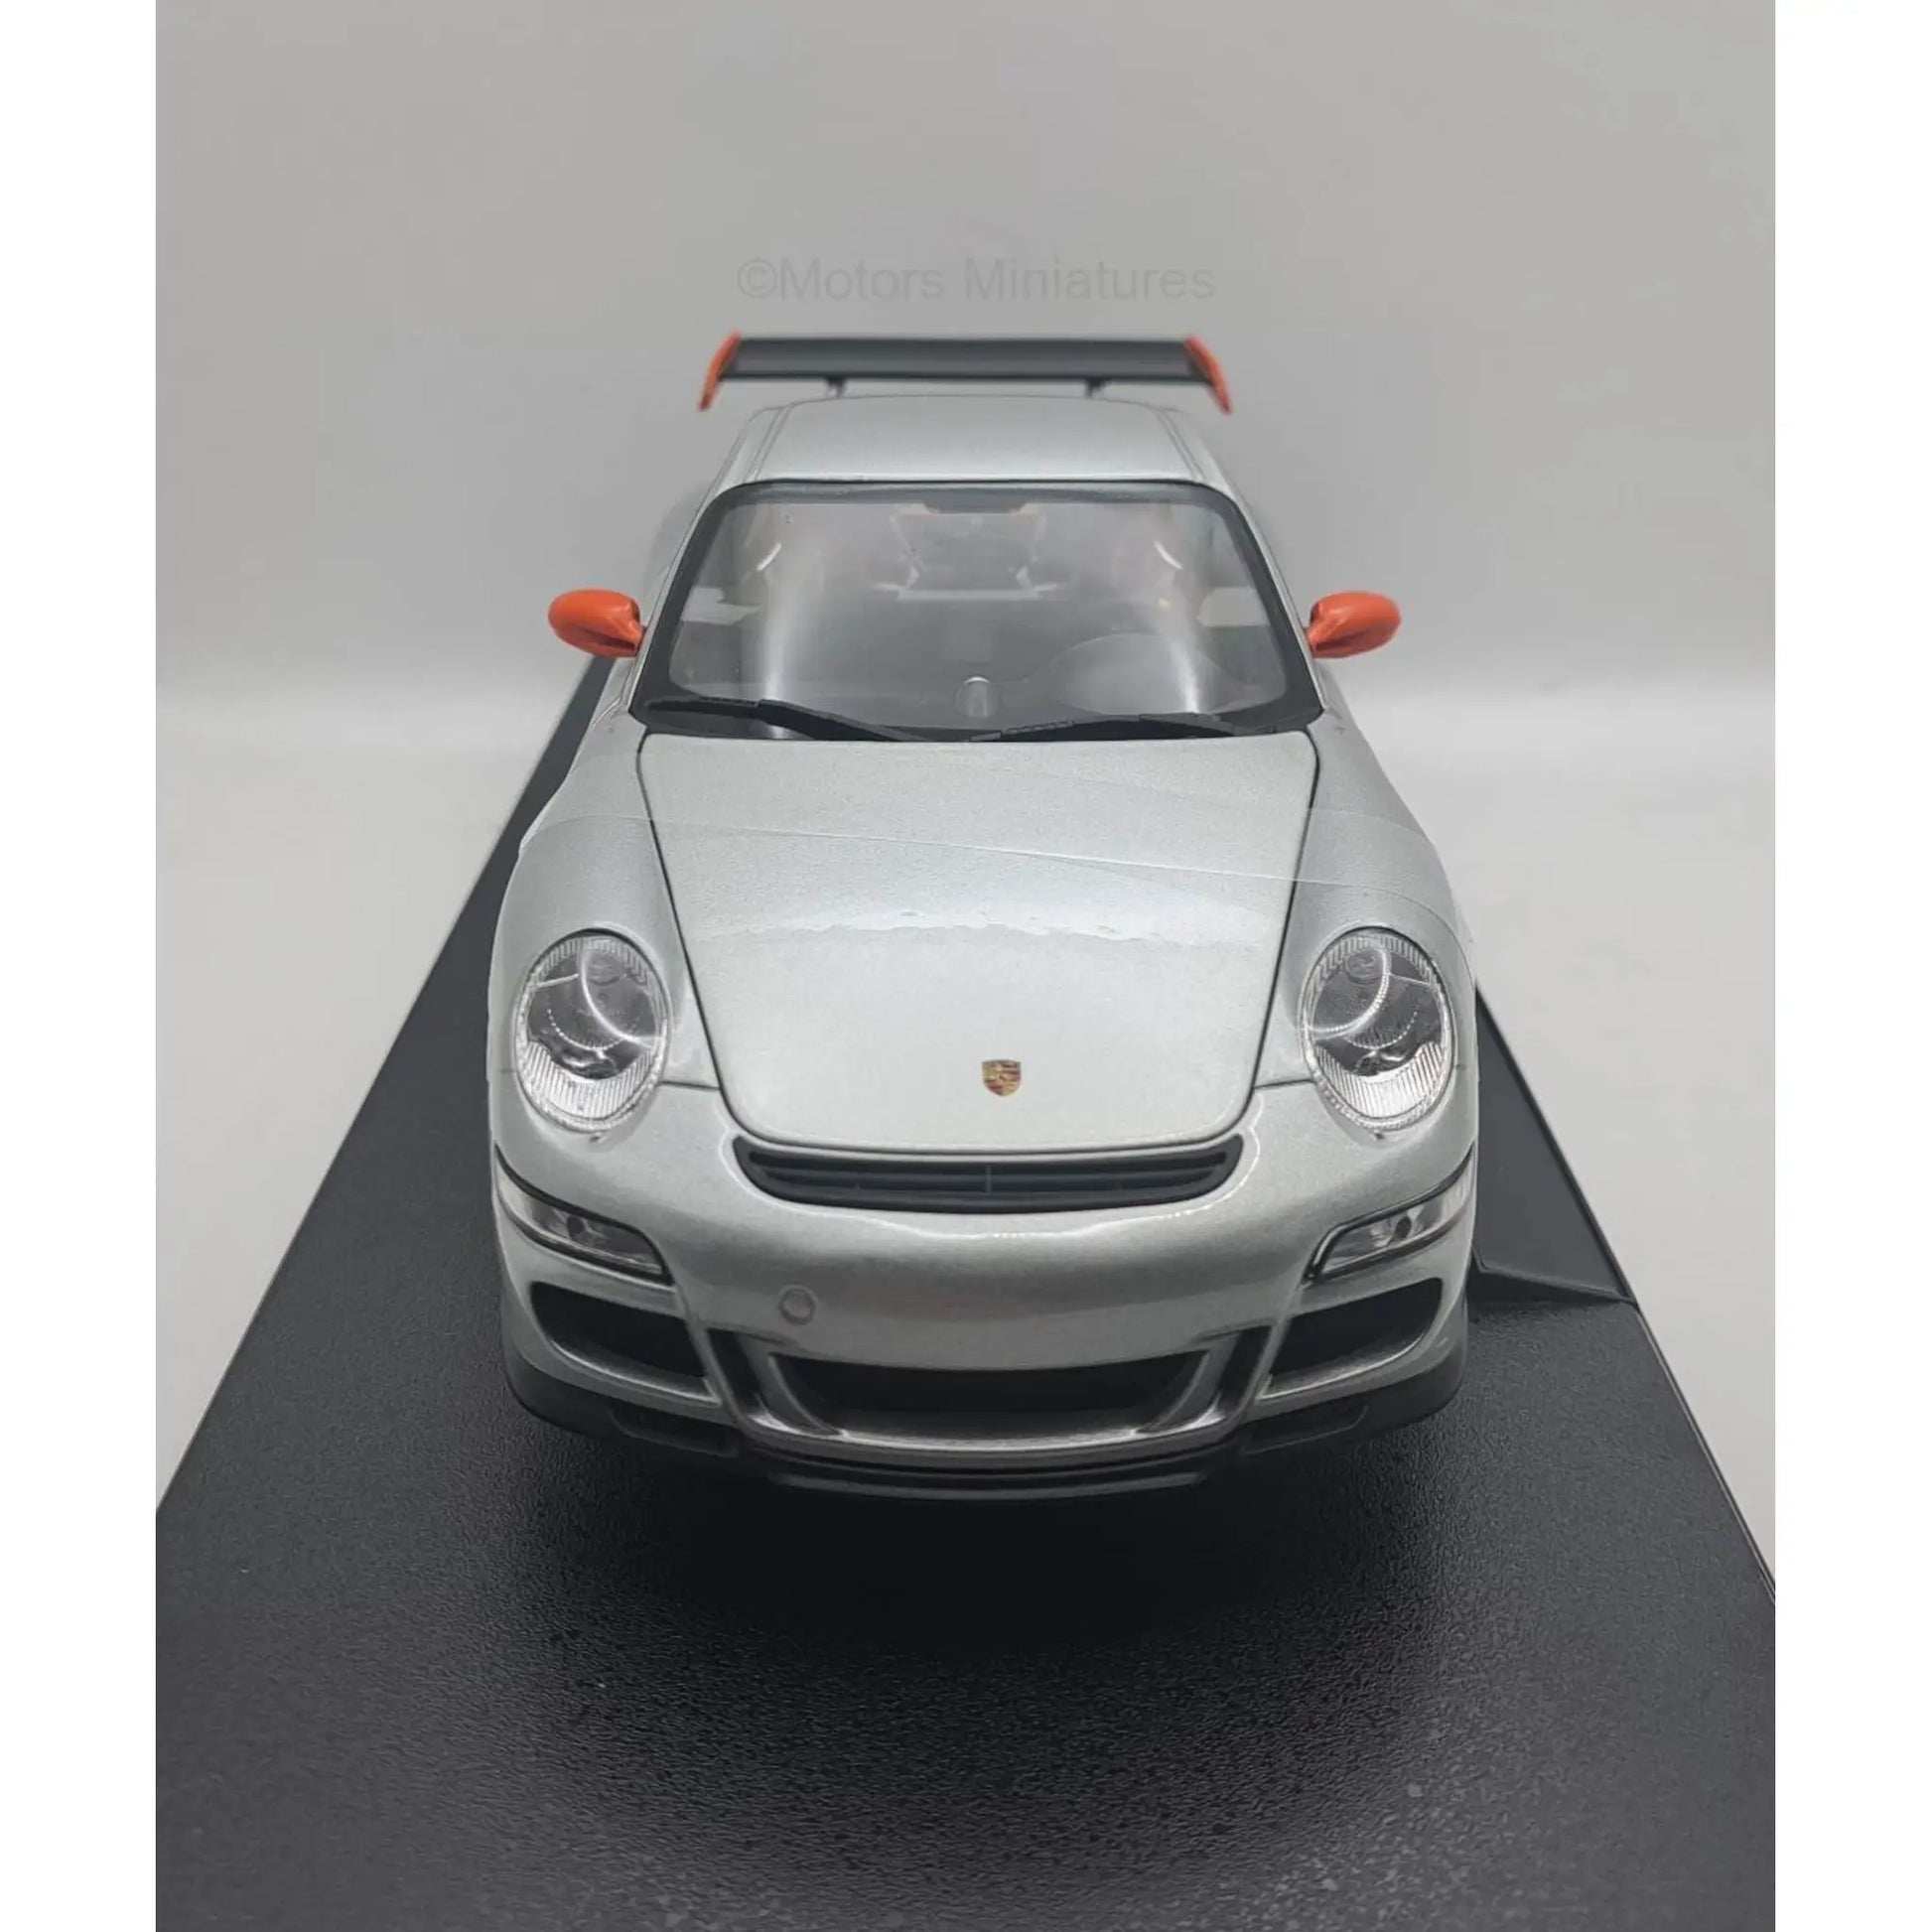 Porsche 911 997 GT3 RS 2007 Welly 1/18 | Motors Miniatures